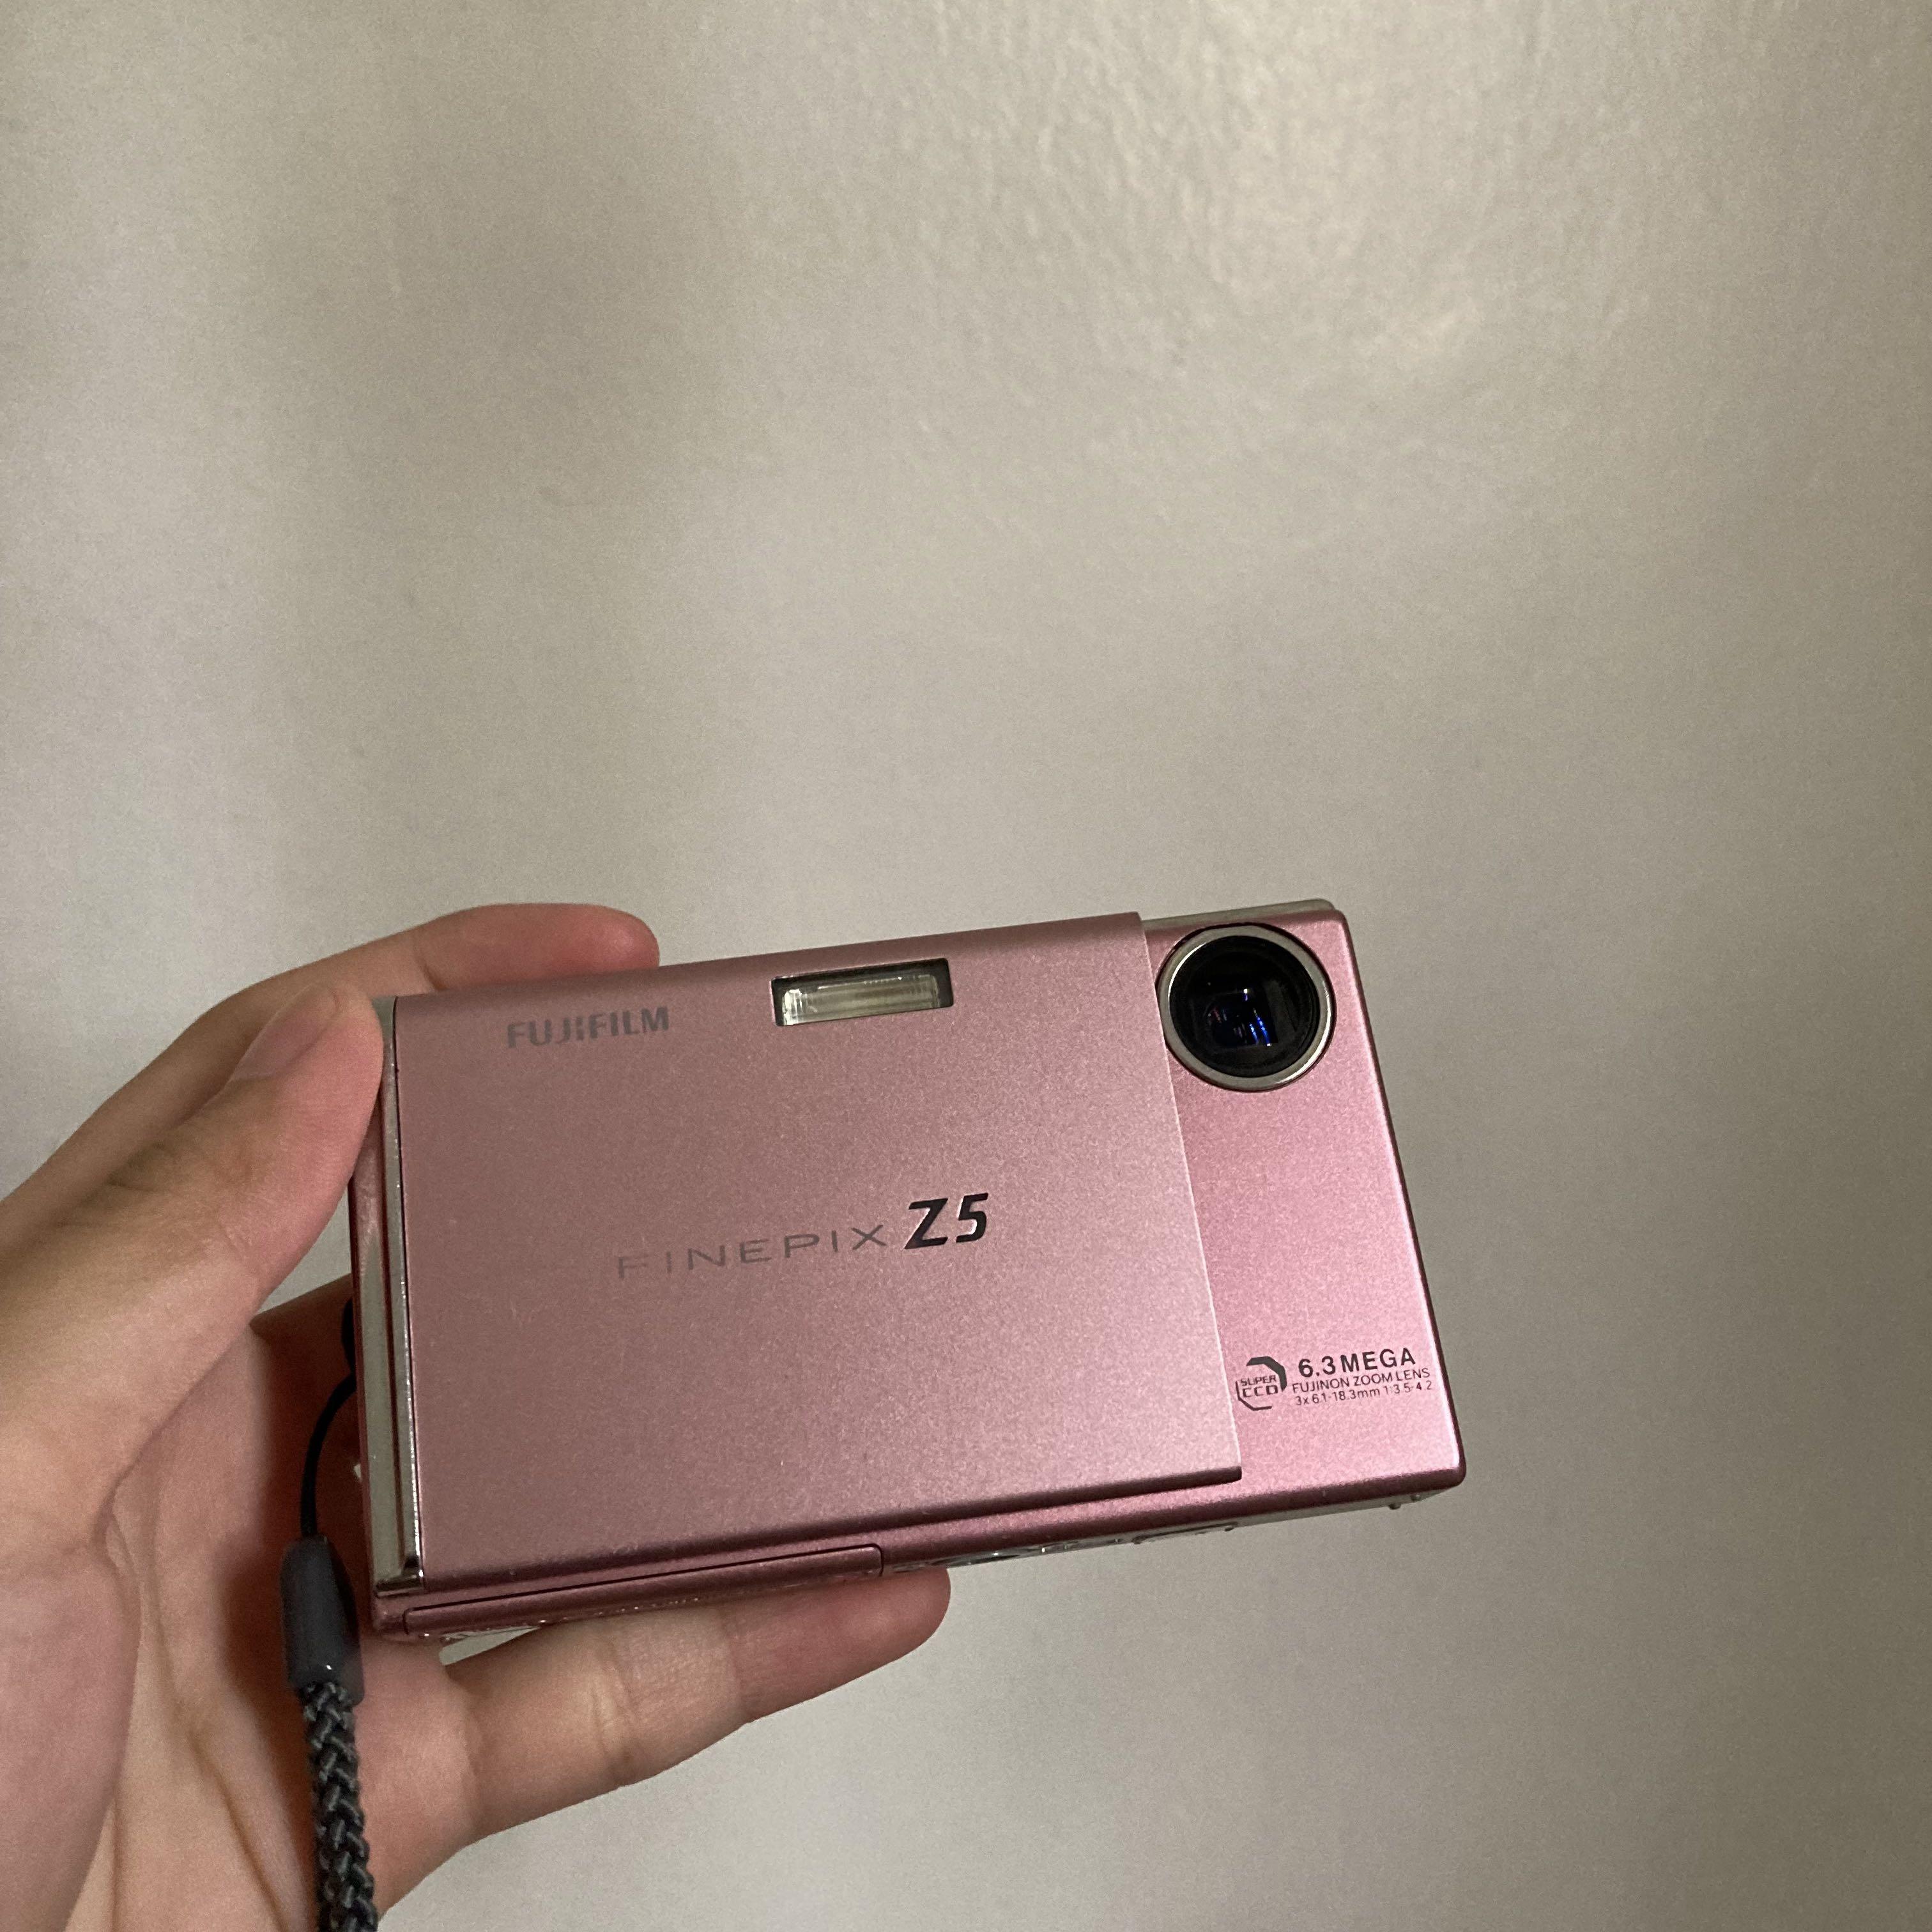 フジフィルム FINEPIX Z5 - デジタルカメラ